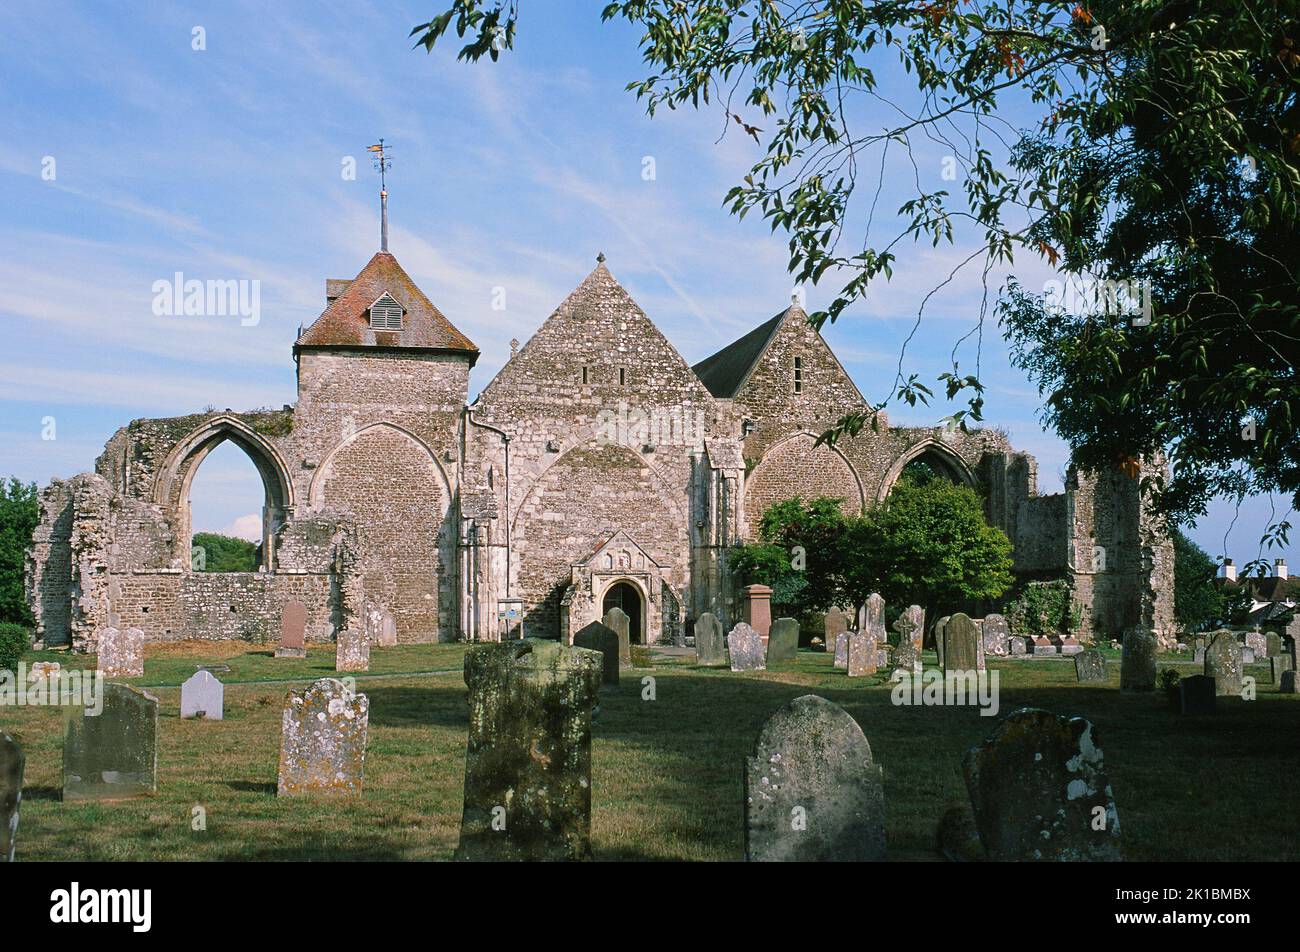 Die historische Kirche des heiligen Thomas des Märtyrers in der Stadt Winchelsea, East Sussex, Südostengland Stockfoto